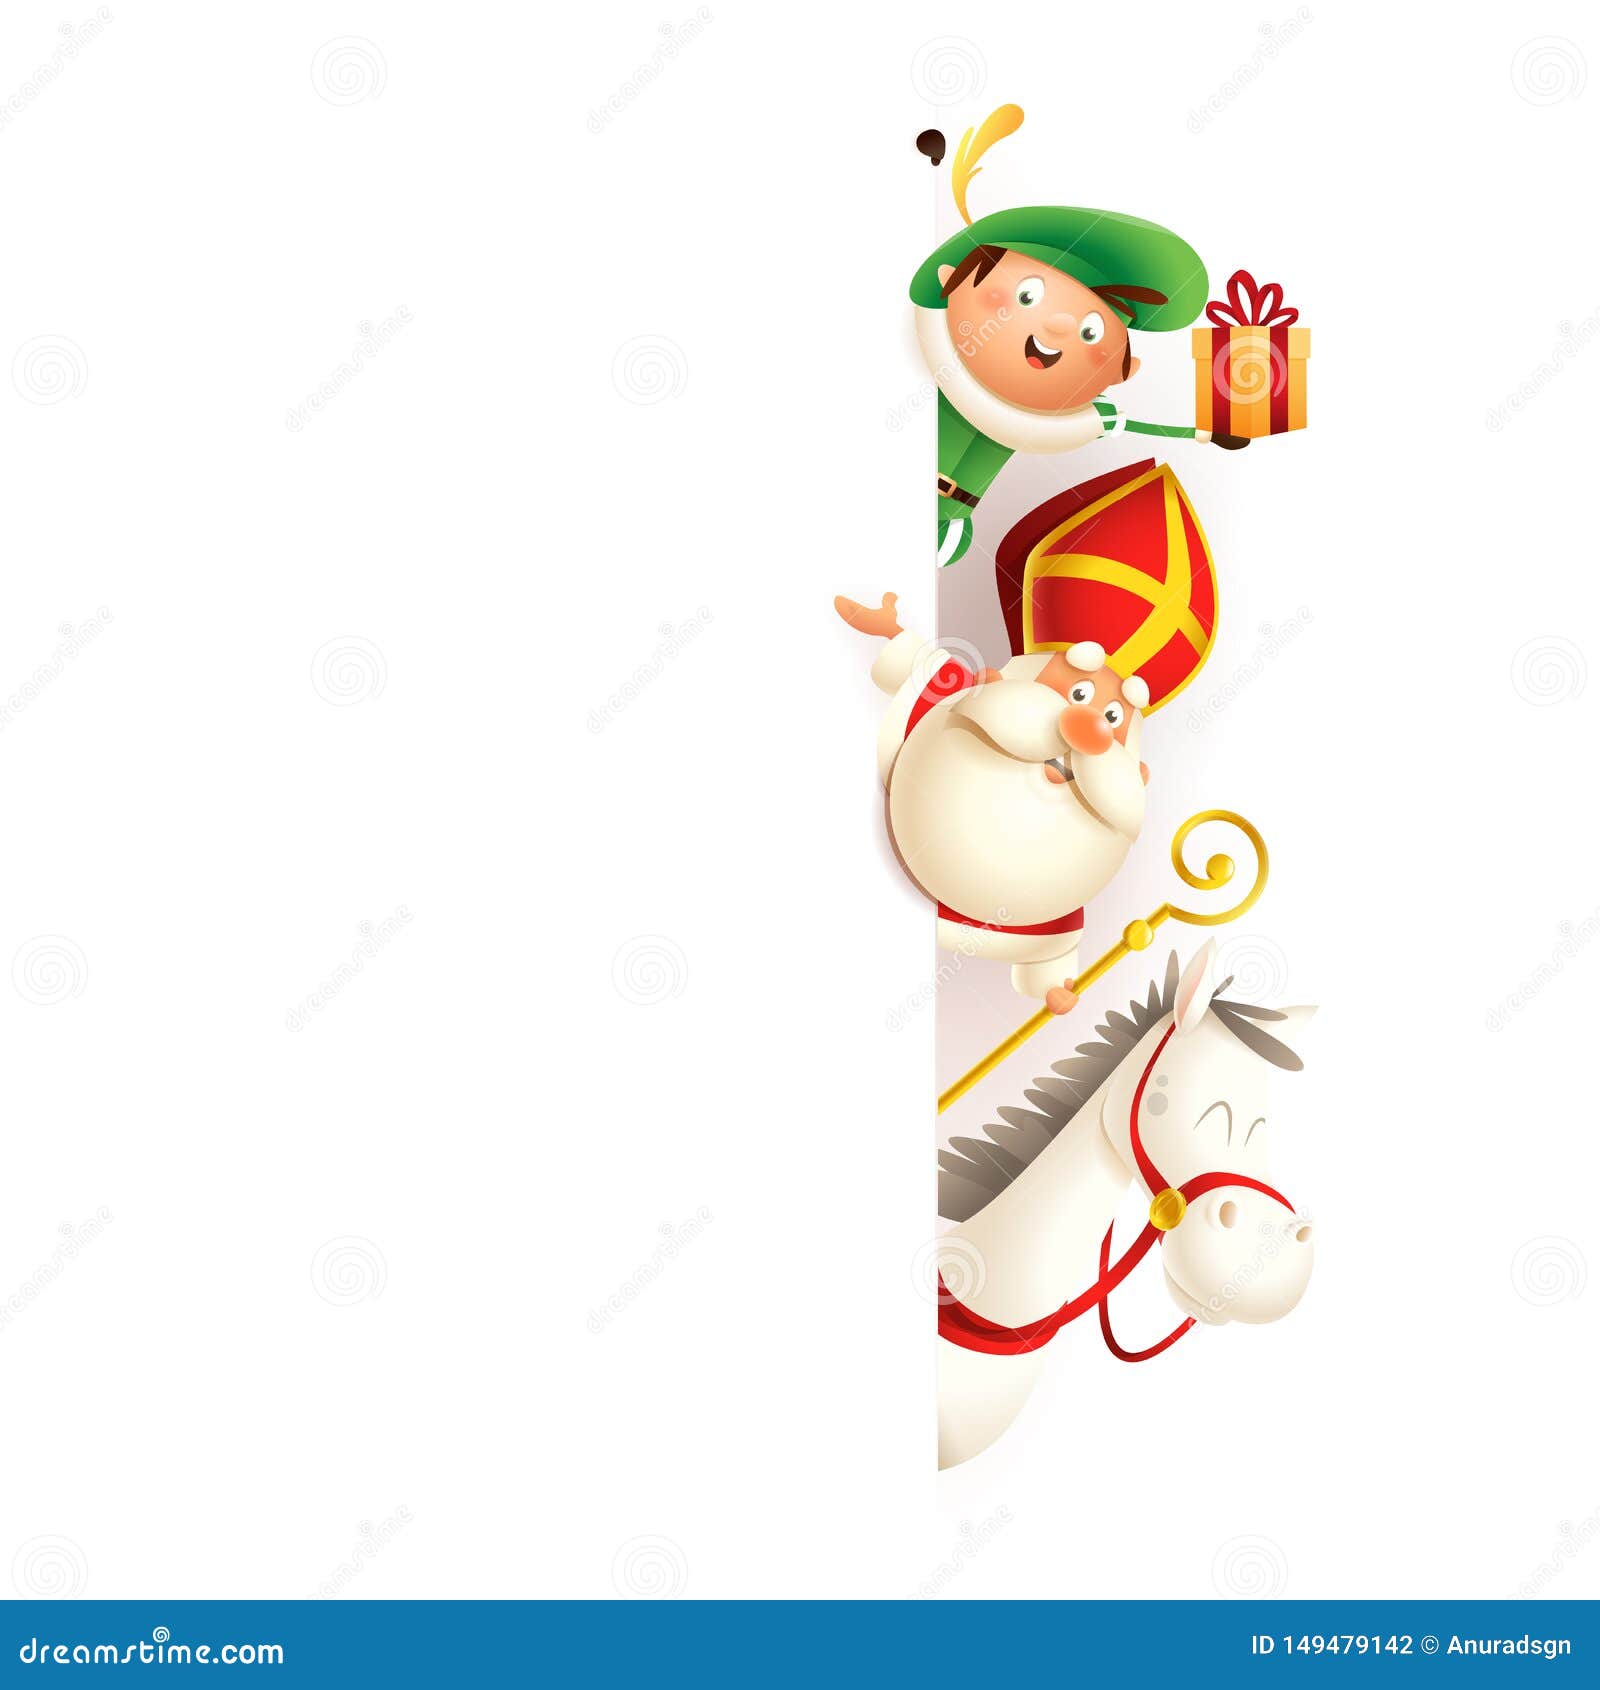 De stad Schilderen Leraar op school Sinterklaas Zwarte Piet Stock Illustrations – 92 Sinterklaas Zwarte Piet  Stock Illustrations, Vectors & Clipart - Dreamstime